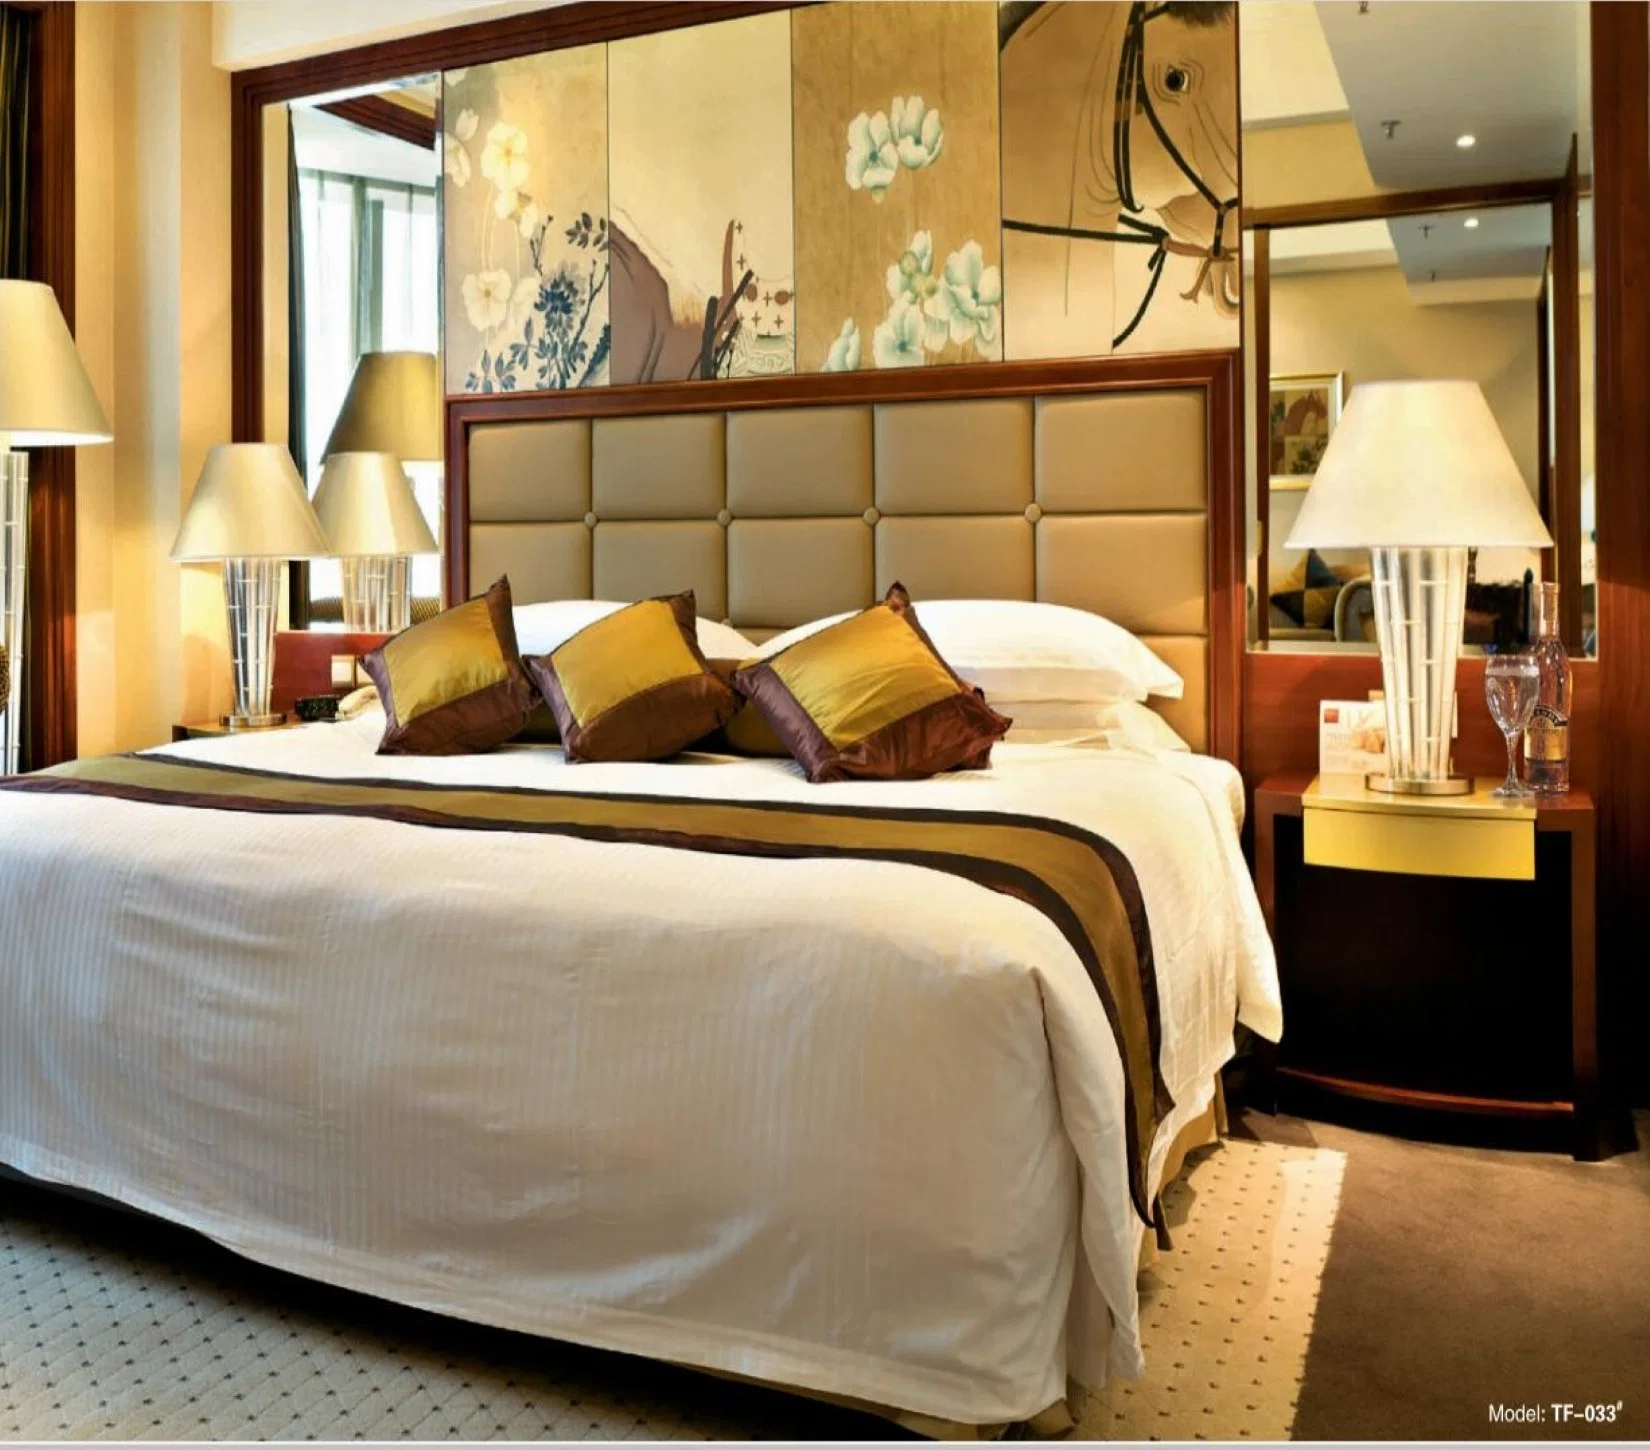 Professional personalizada de 5 estrelas Hotel de design do mobiliário de qualidade superior Design Madeira Quarto Set